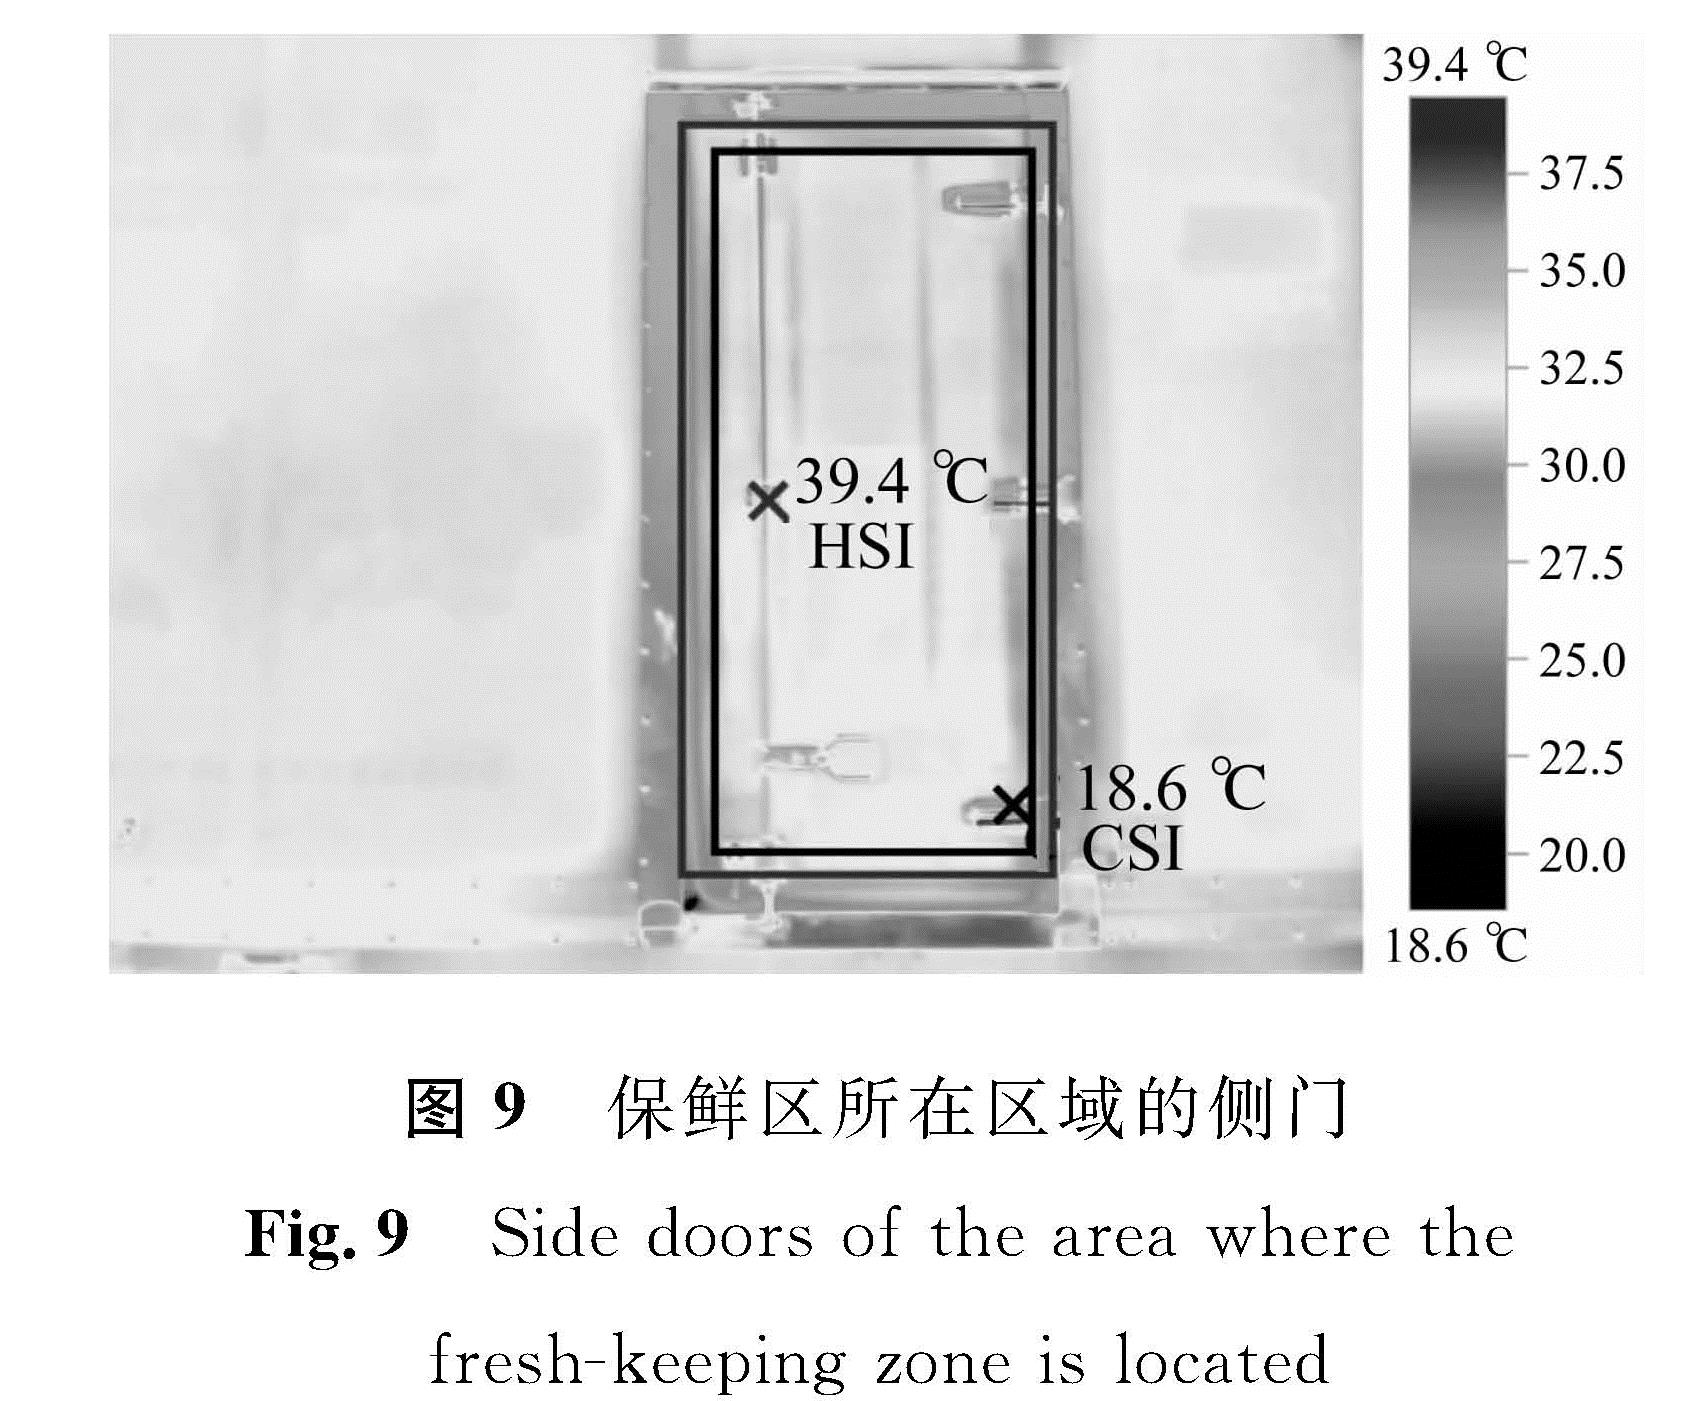 图9 保鲜区所在区域的侧门<br/>Fig.9 Side doors of the area where the fresh-keeping zone is located